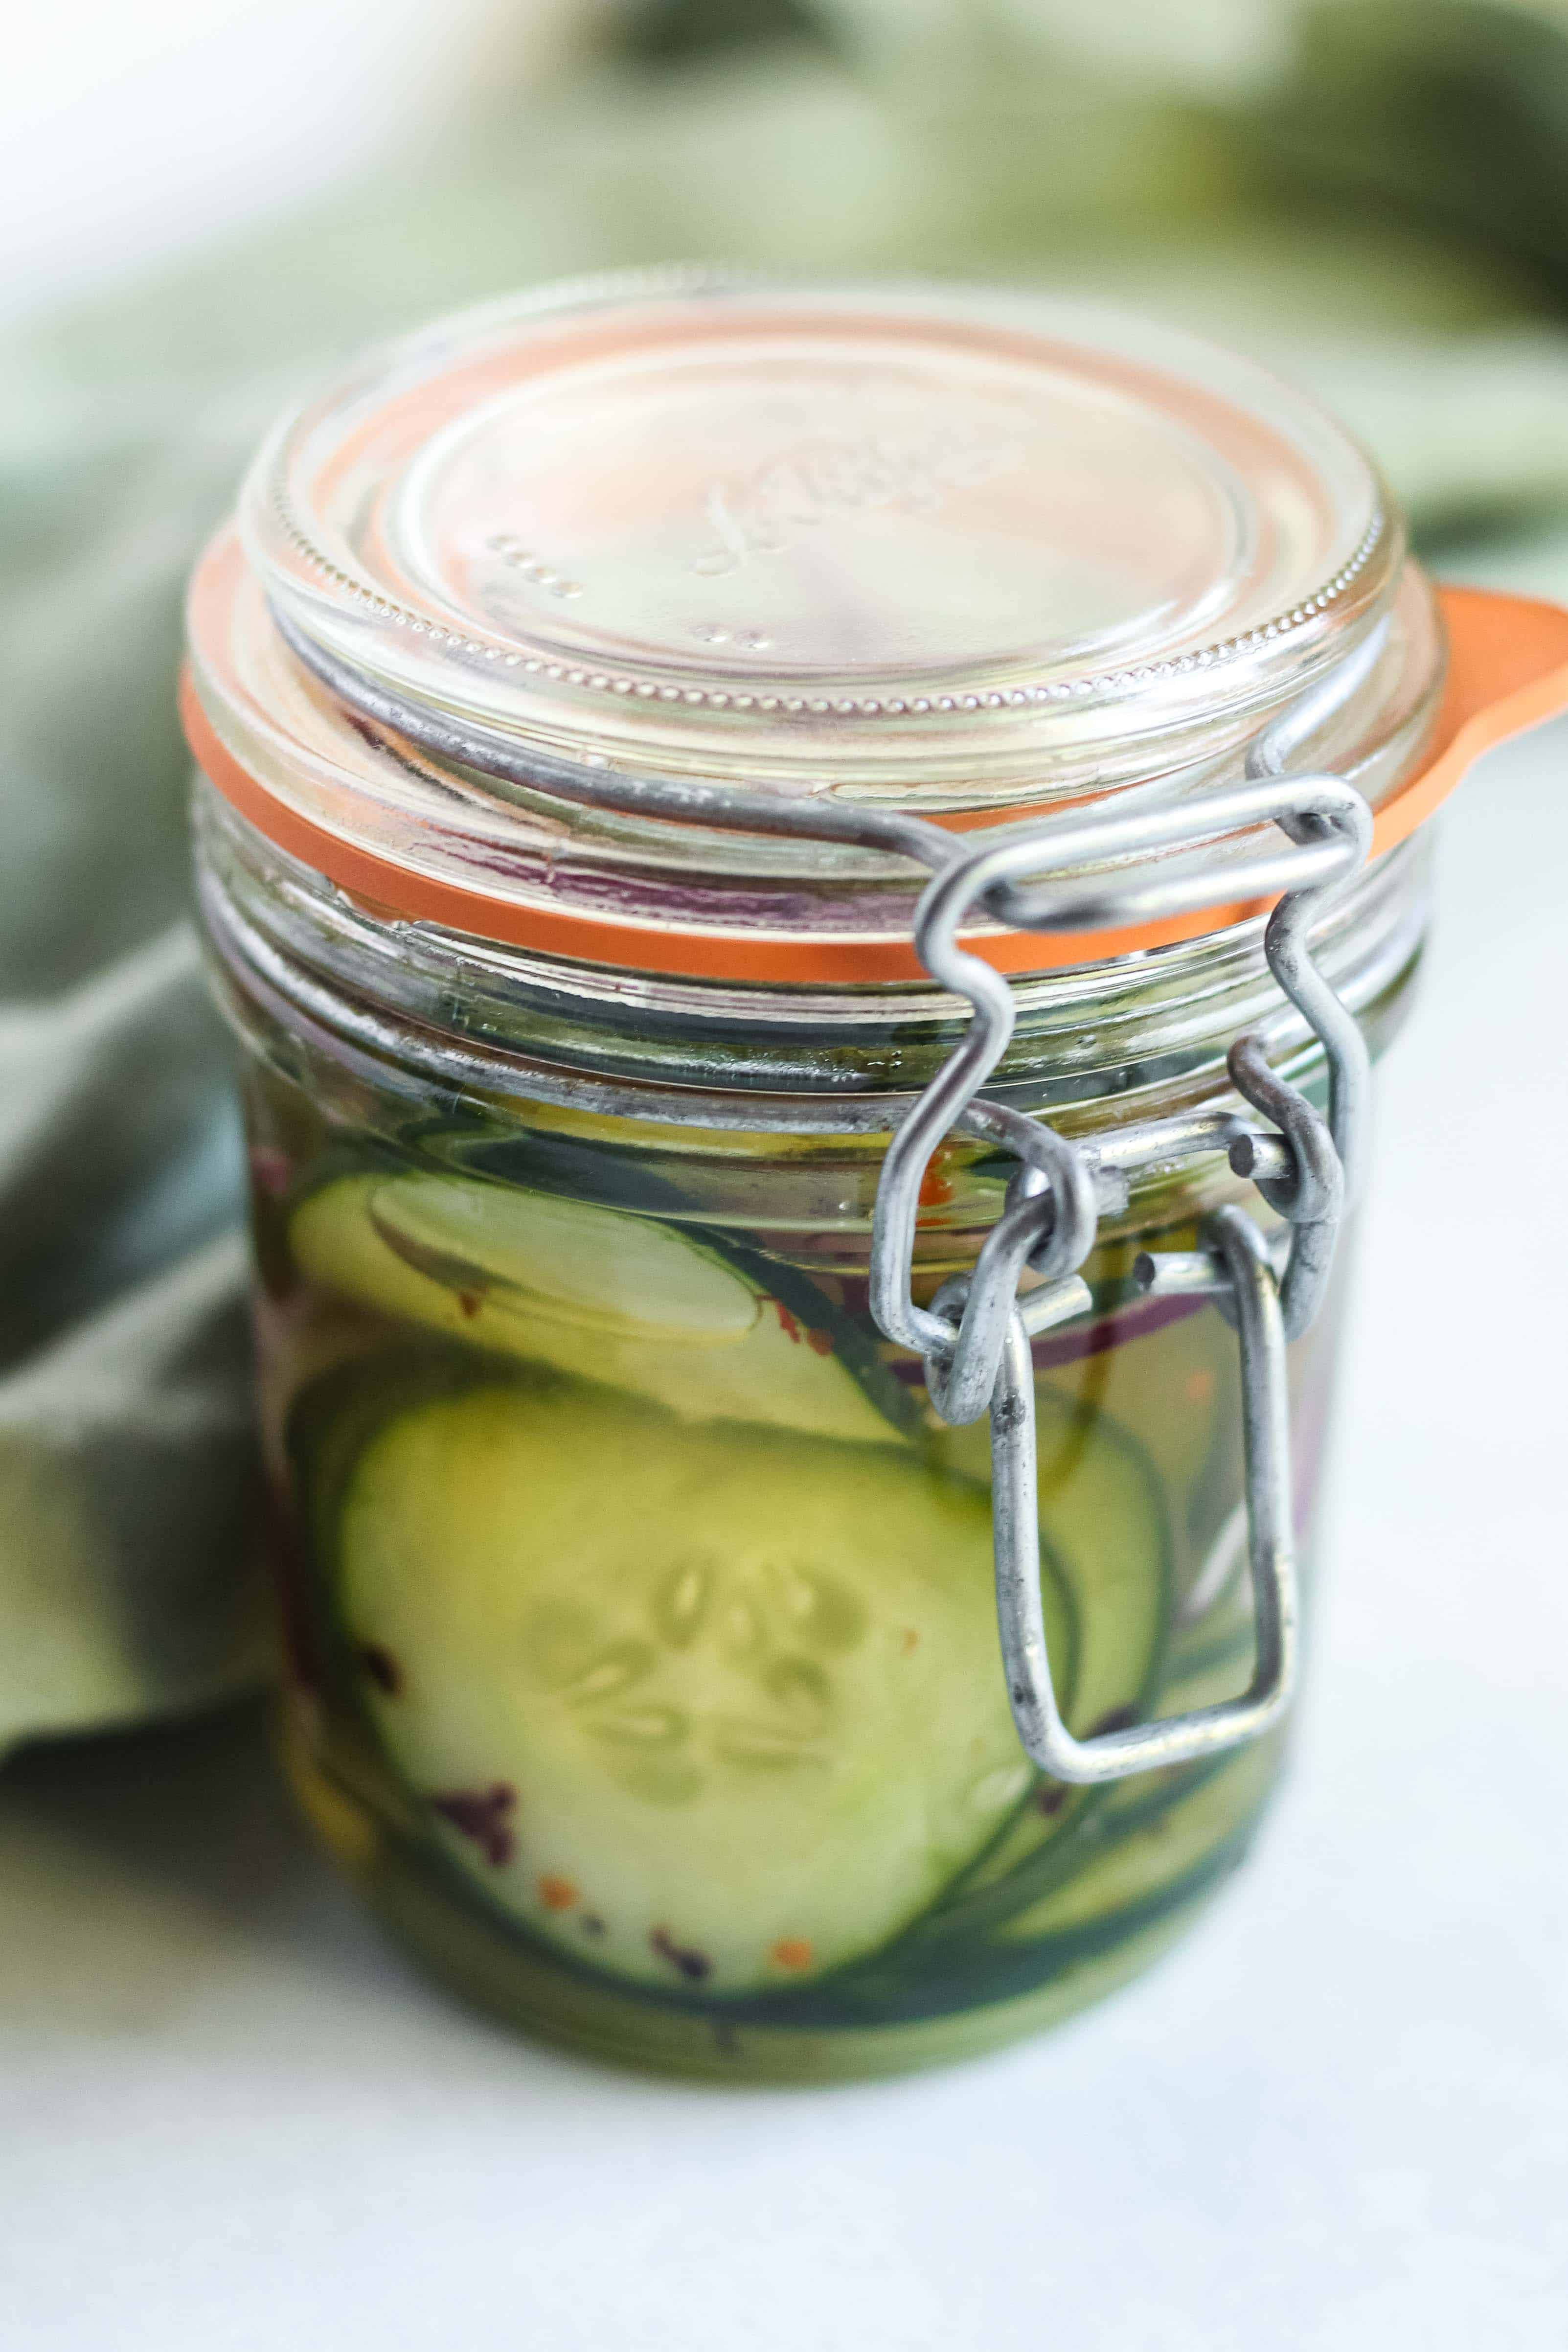 Quick Pickled Cucumbers in a glass jar